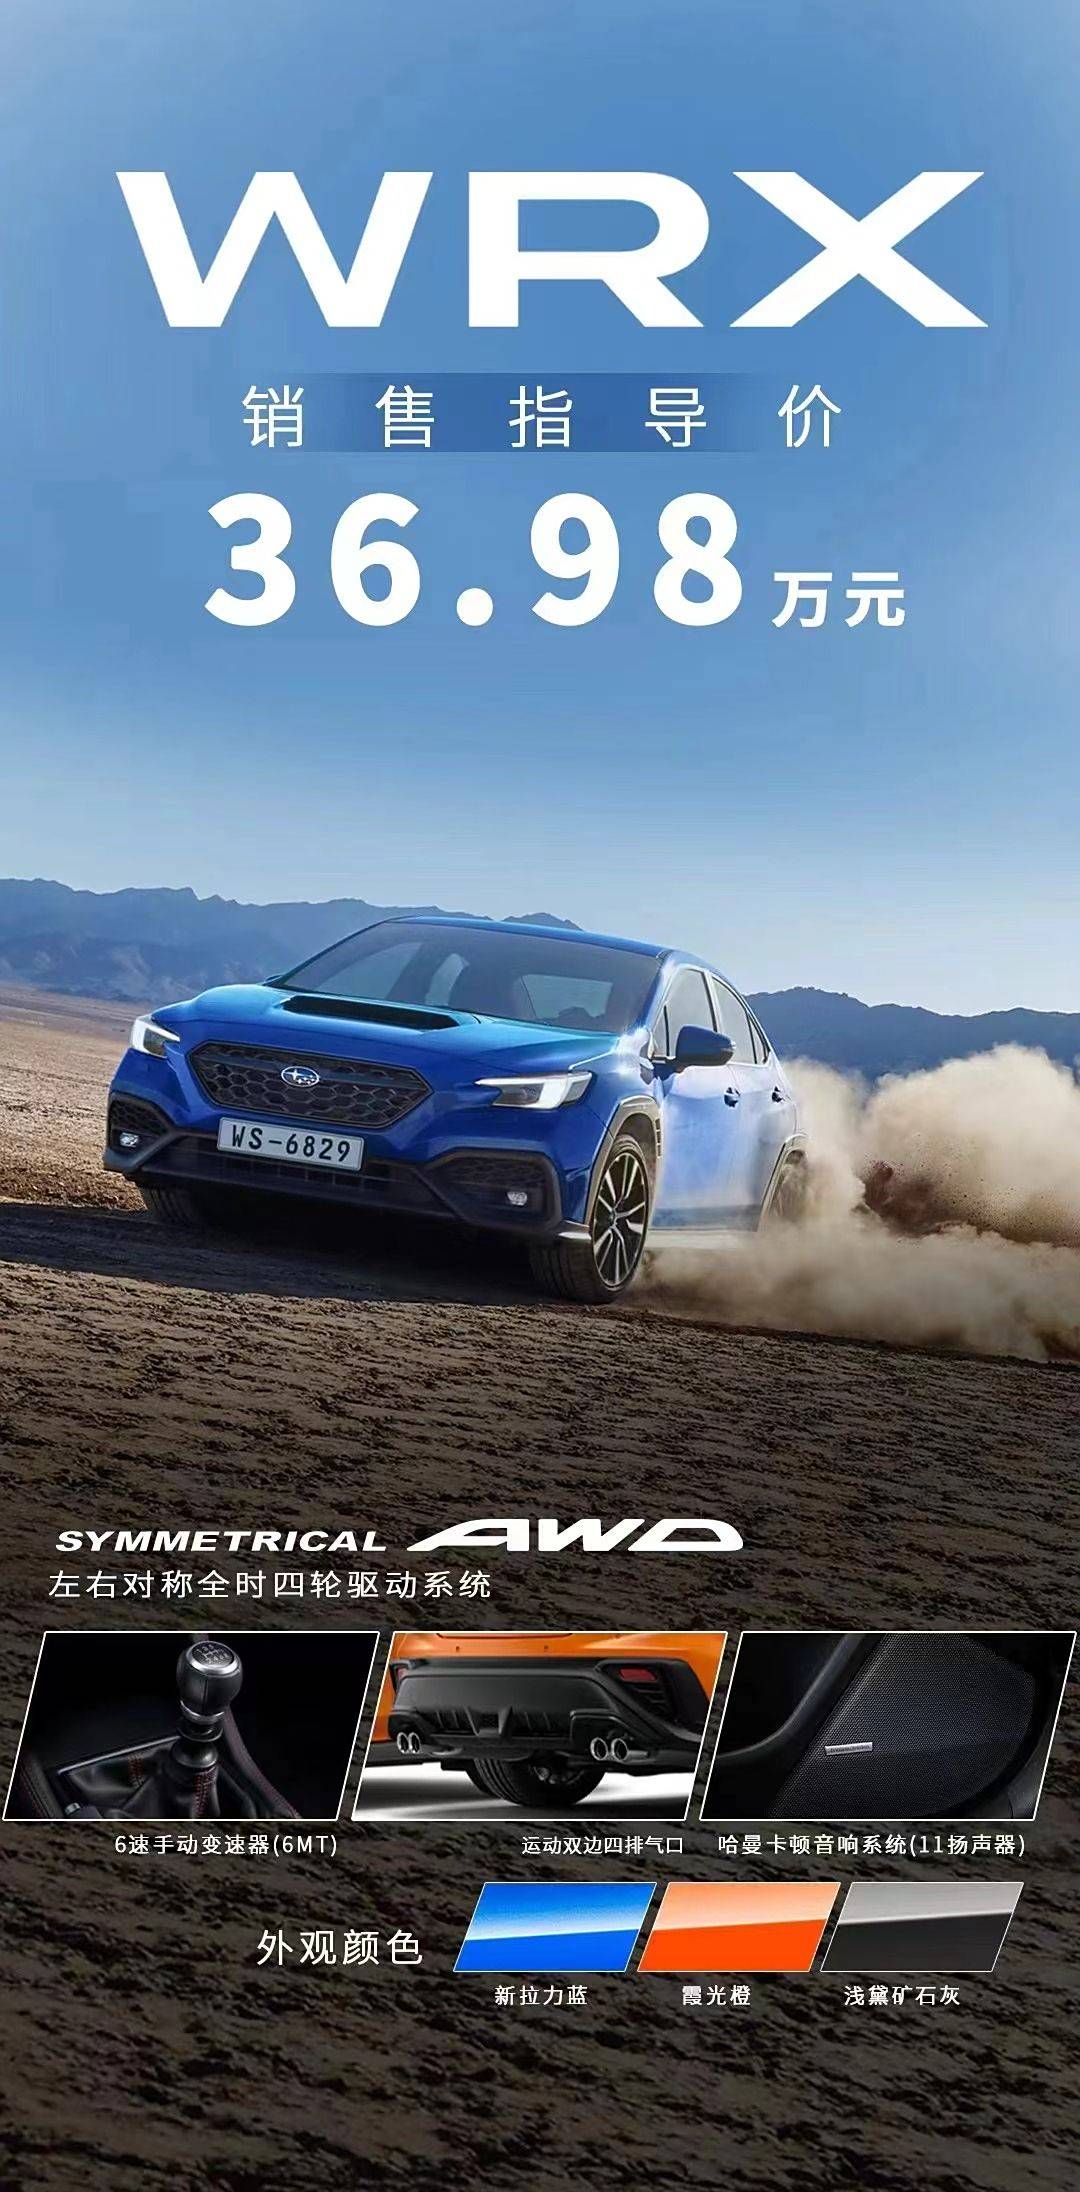 售价36.98万元。斯巴鲁WRX正式上市_搜狐汽车_ Sohu.com。